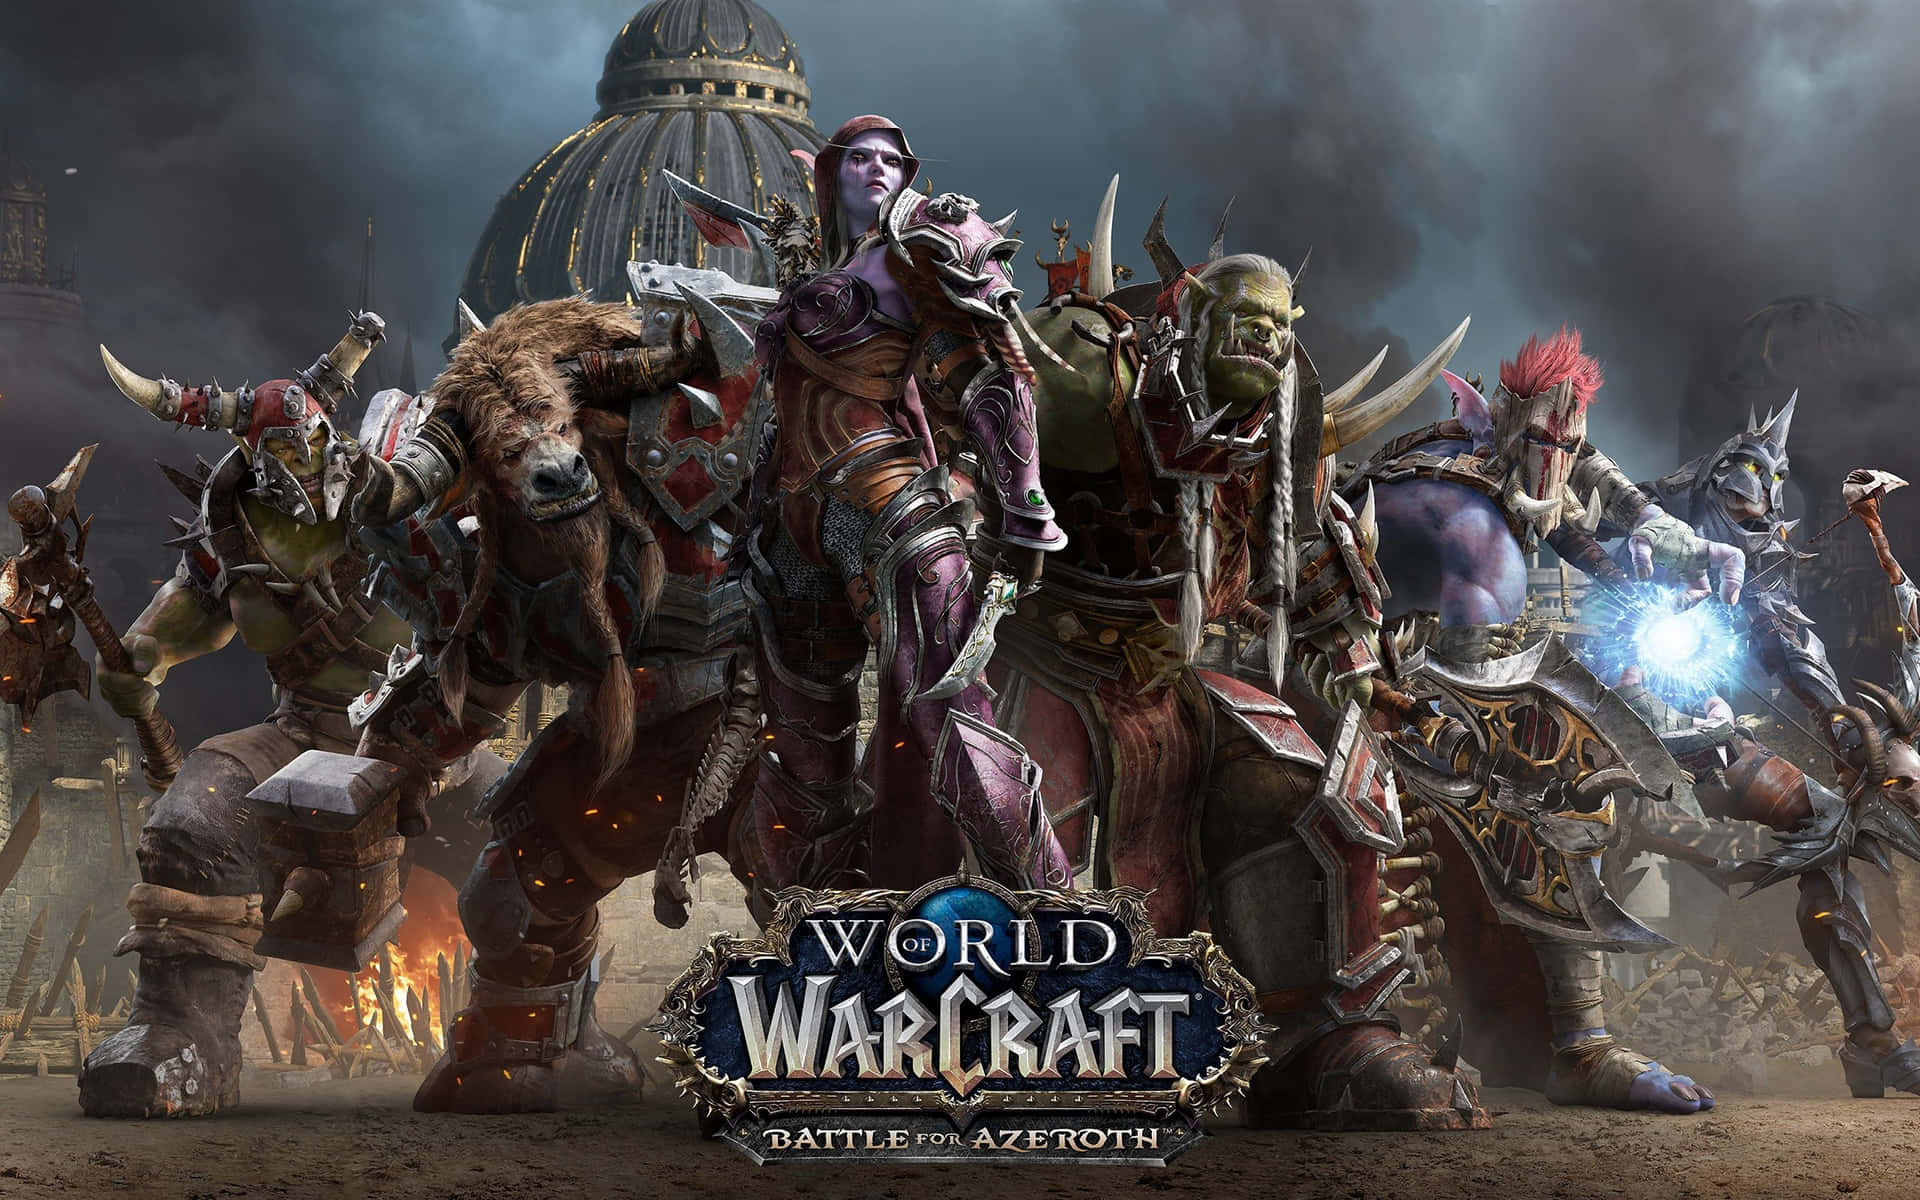 Epicabattaglia In World Of Warcraft